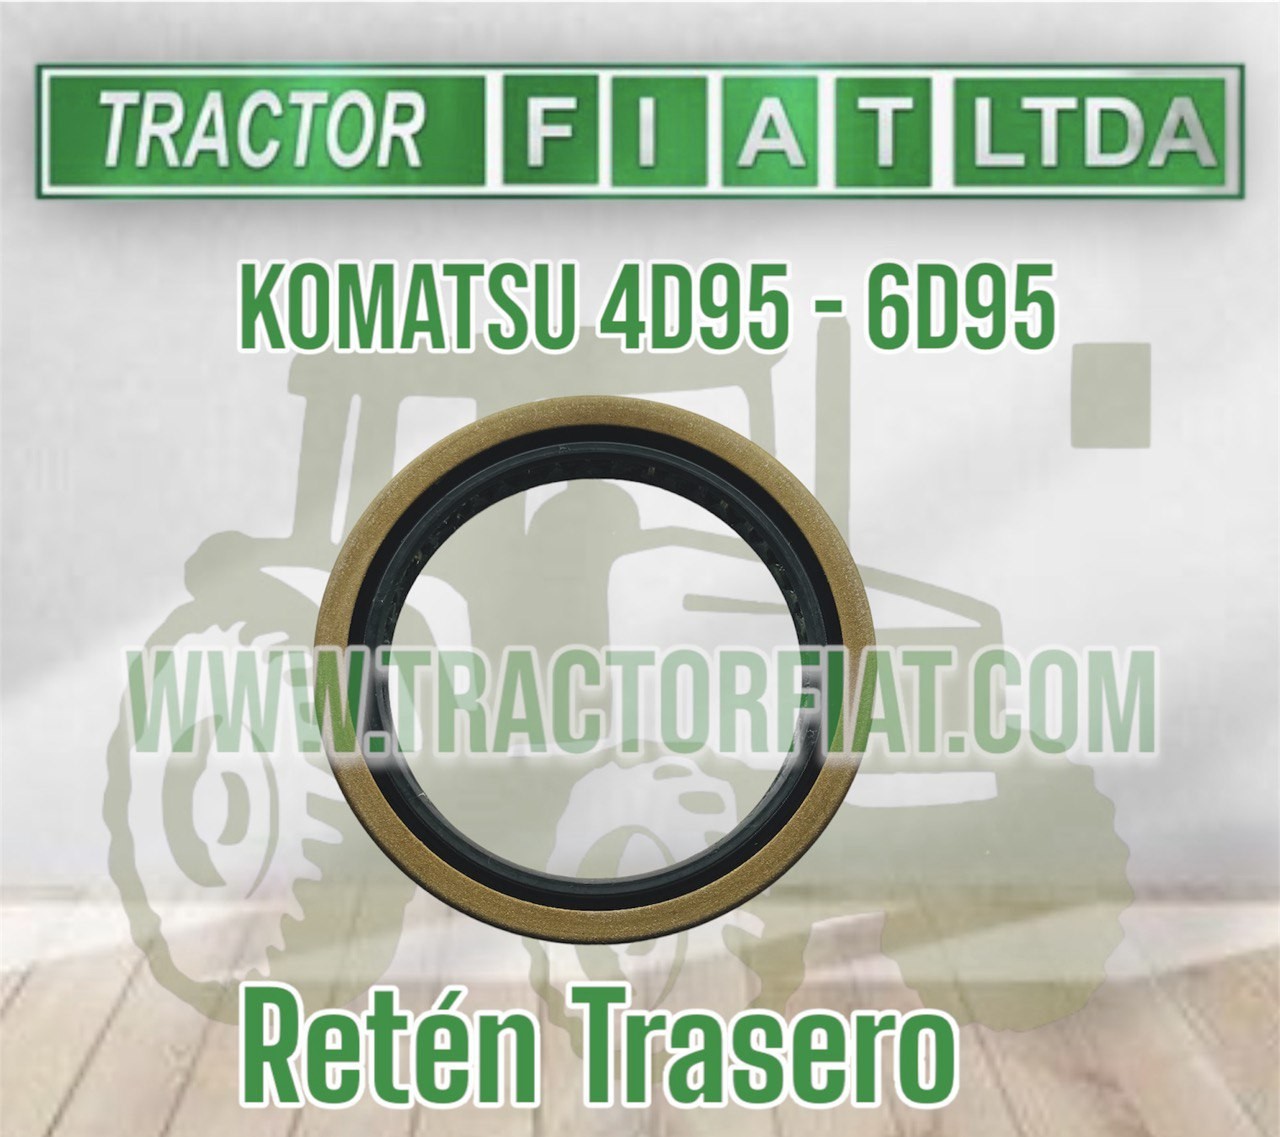 RETEN TRASERO - MOTOR KOMATSU 6D95/4D95